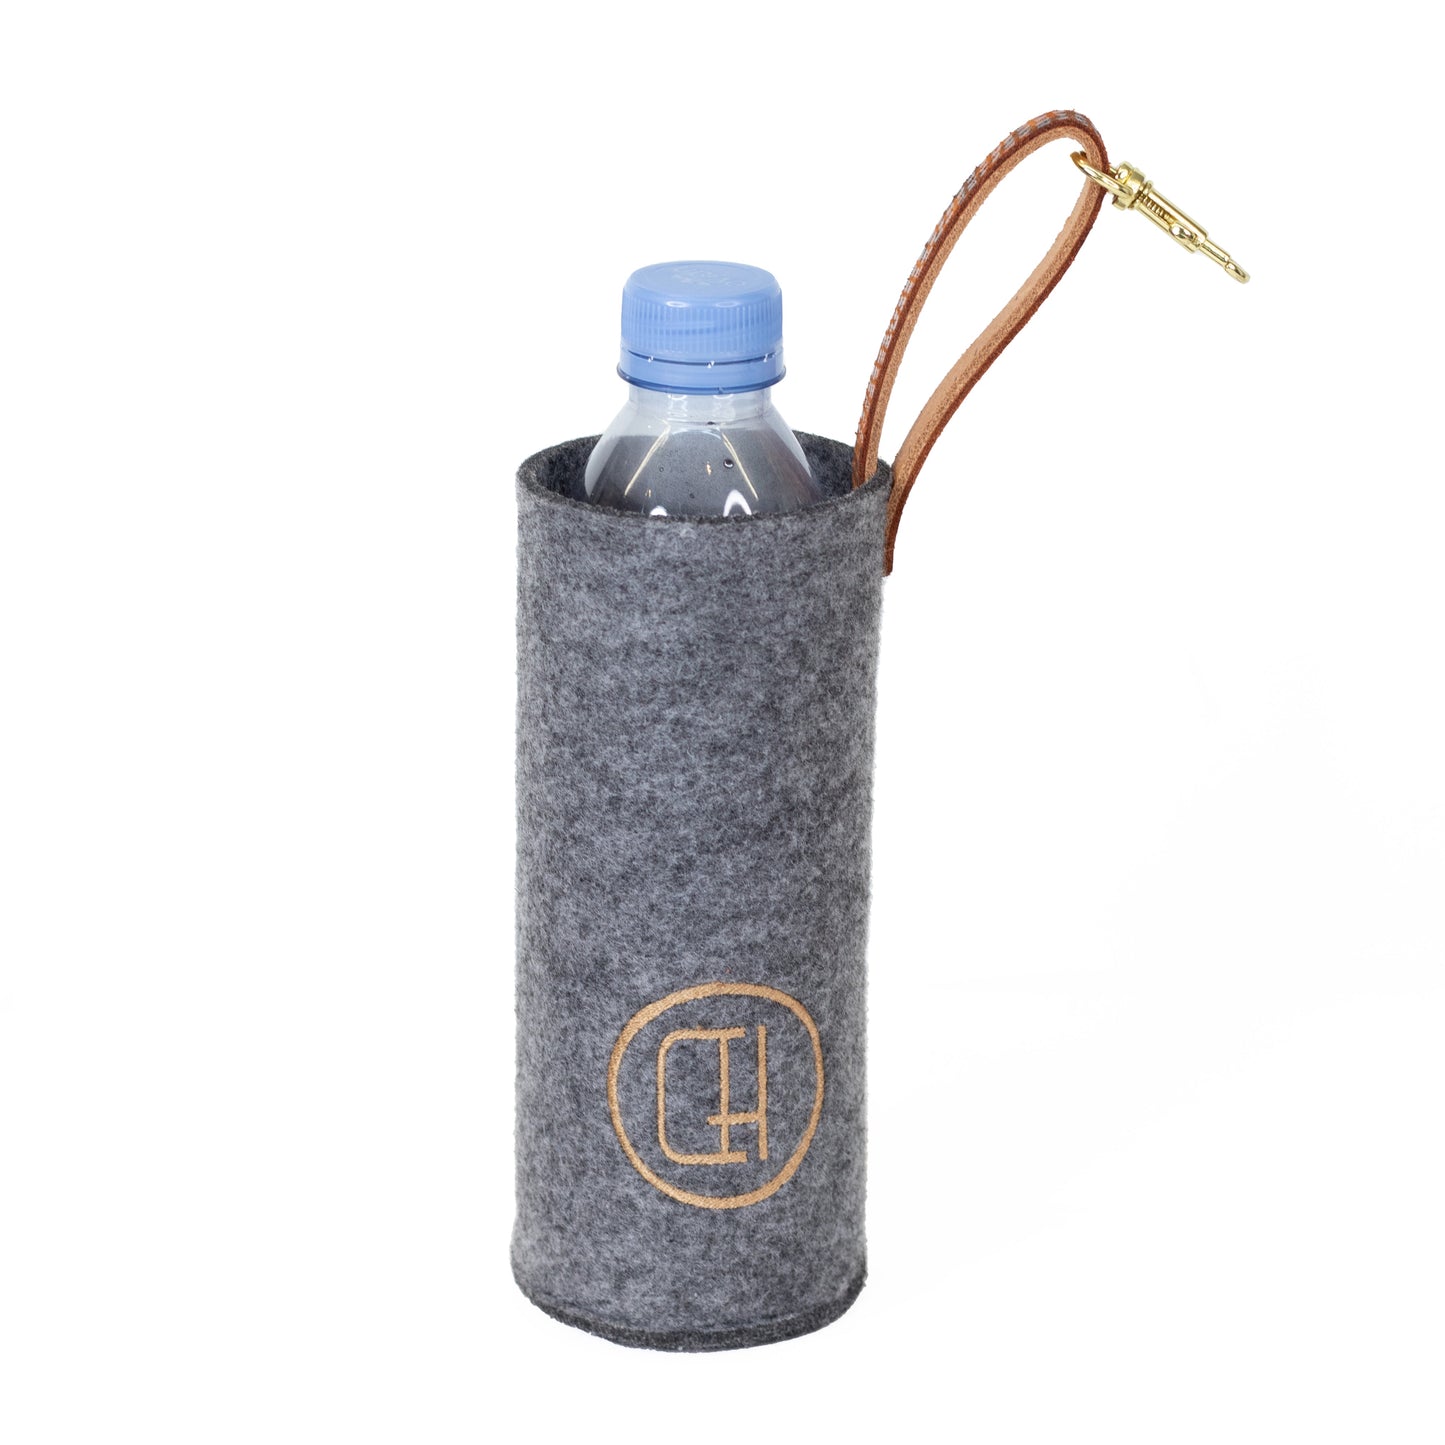 Belt Bag Clip-On Water Bottle Holder